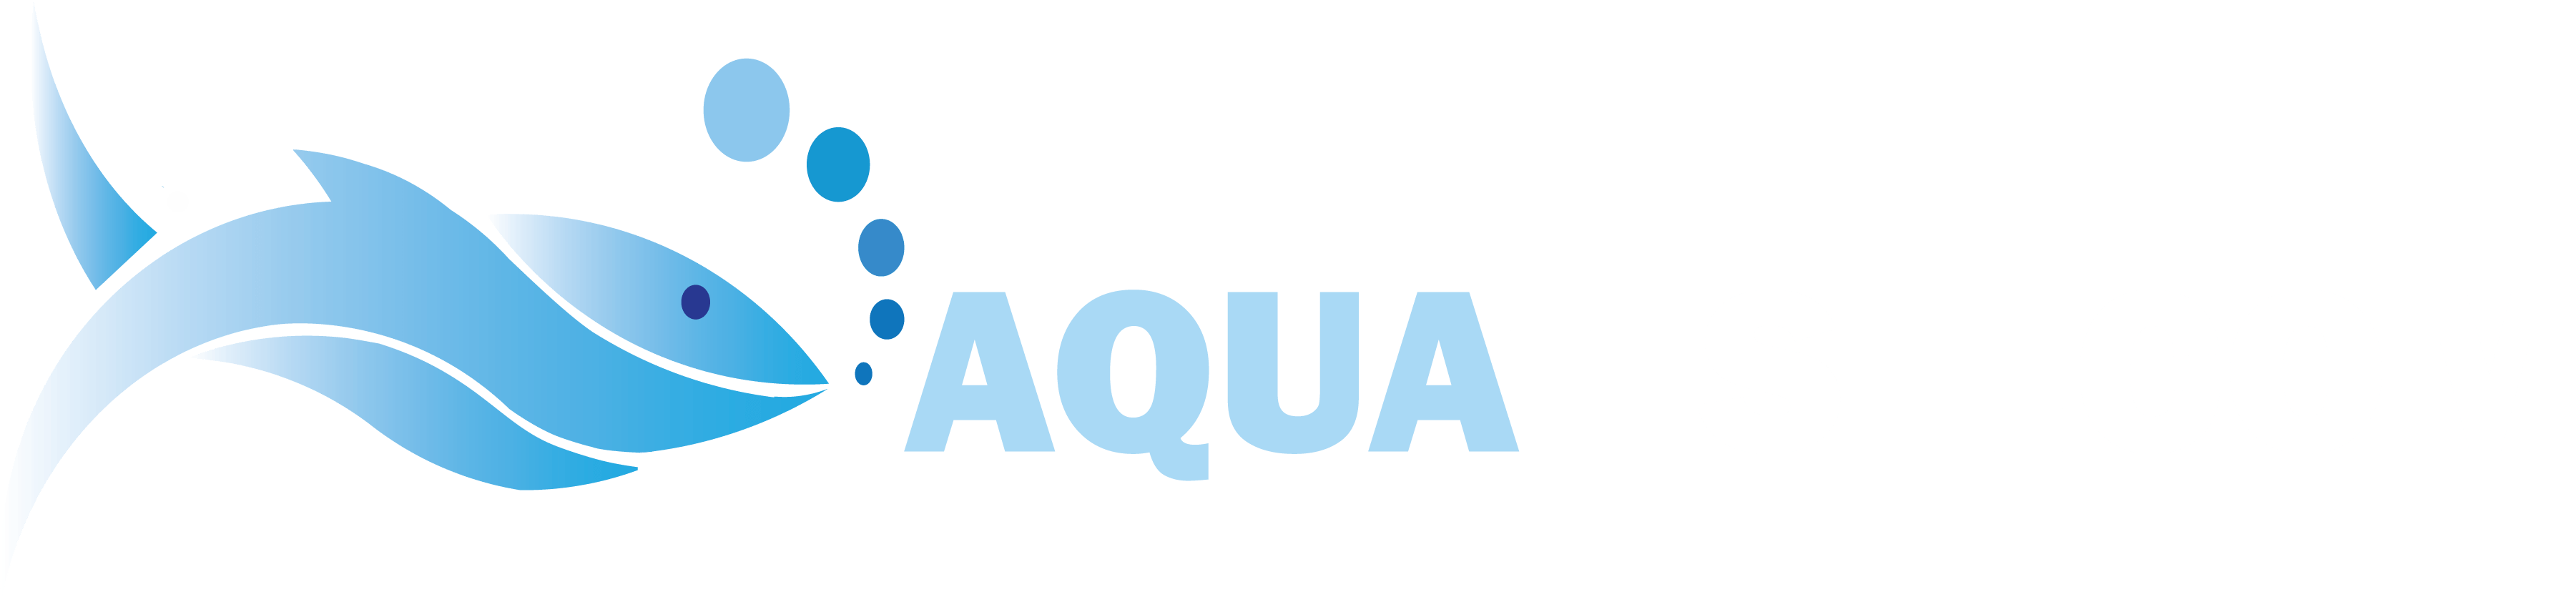 Aquatish